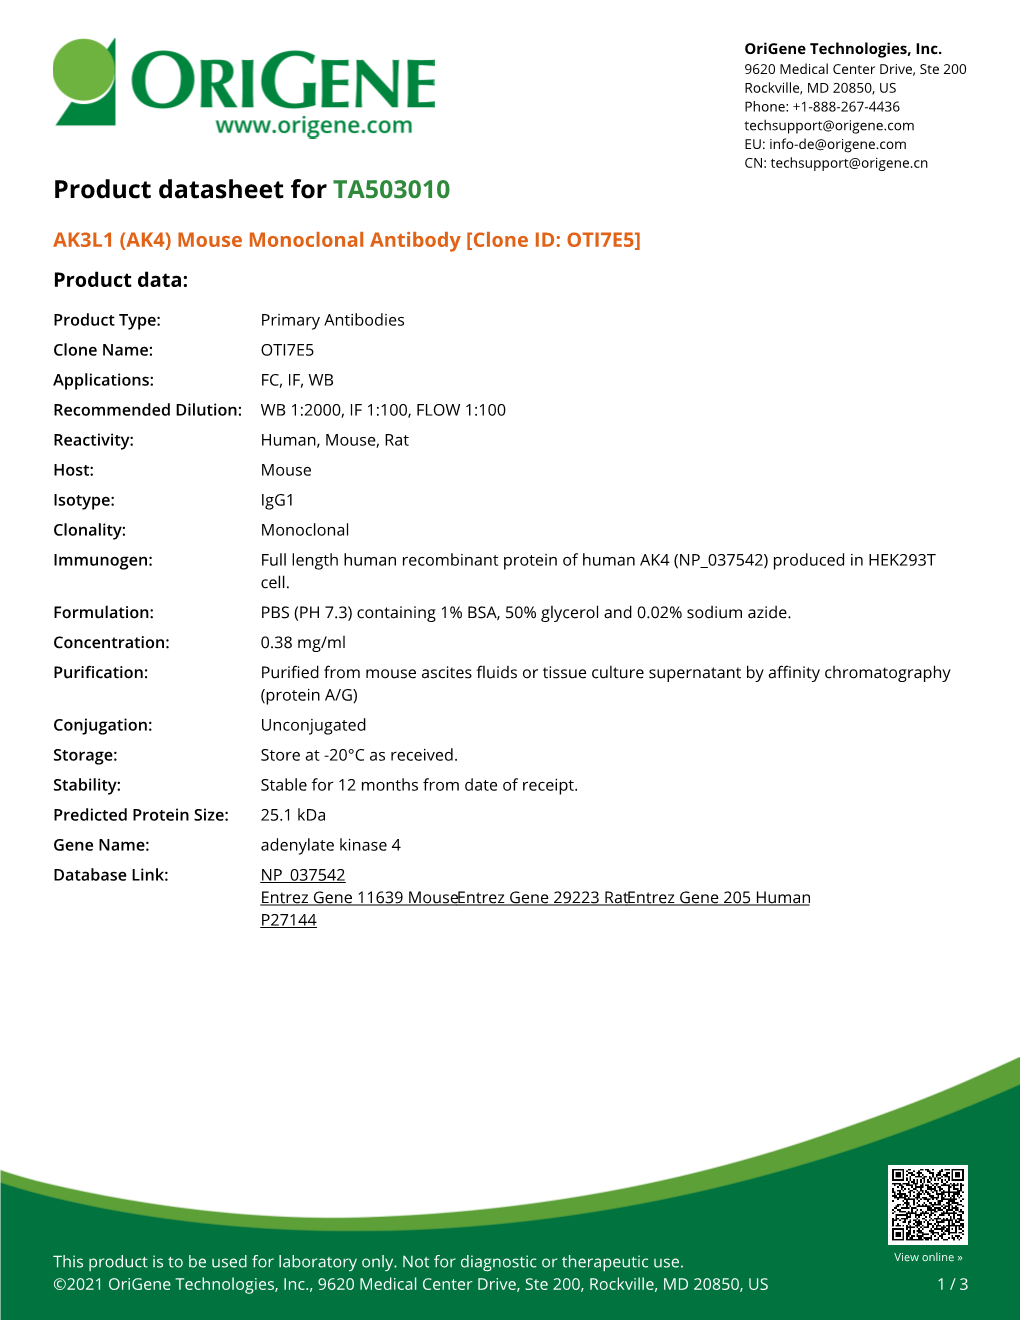 AK3L1 (AK4) Mouse Monoclonal Antibody [Clone ID: OTI7E5] Product Data